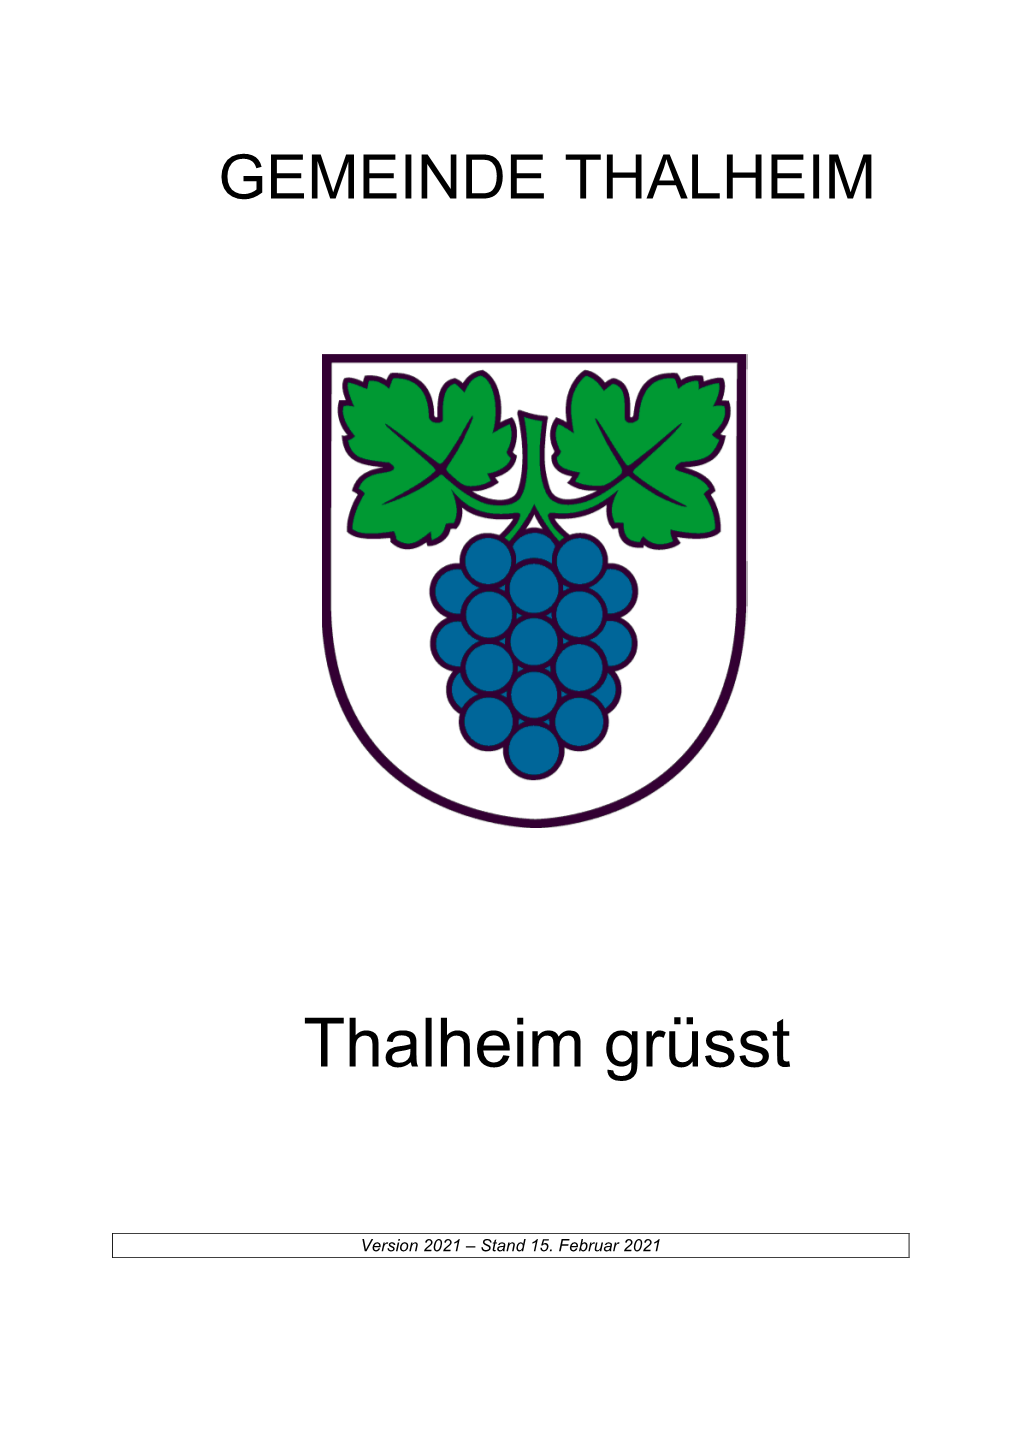 Thalheim Grüsst